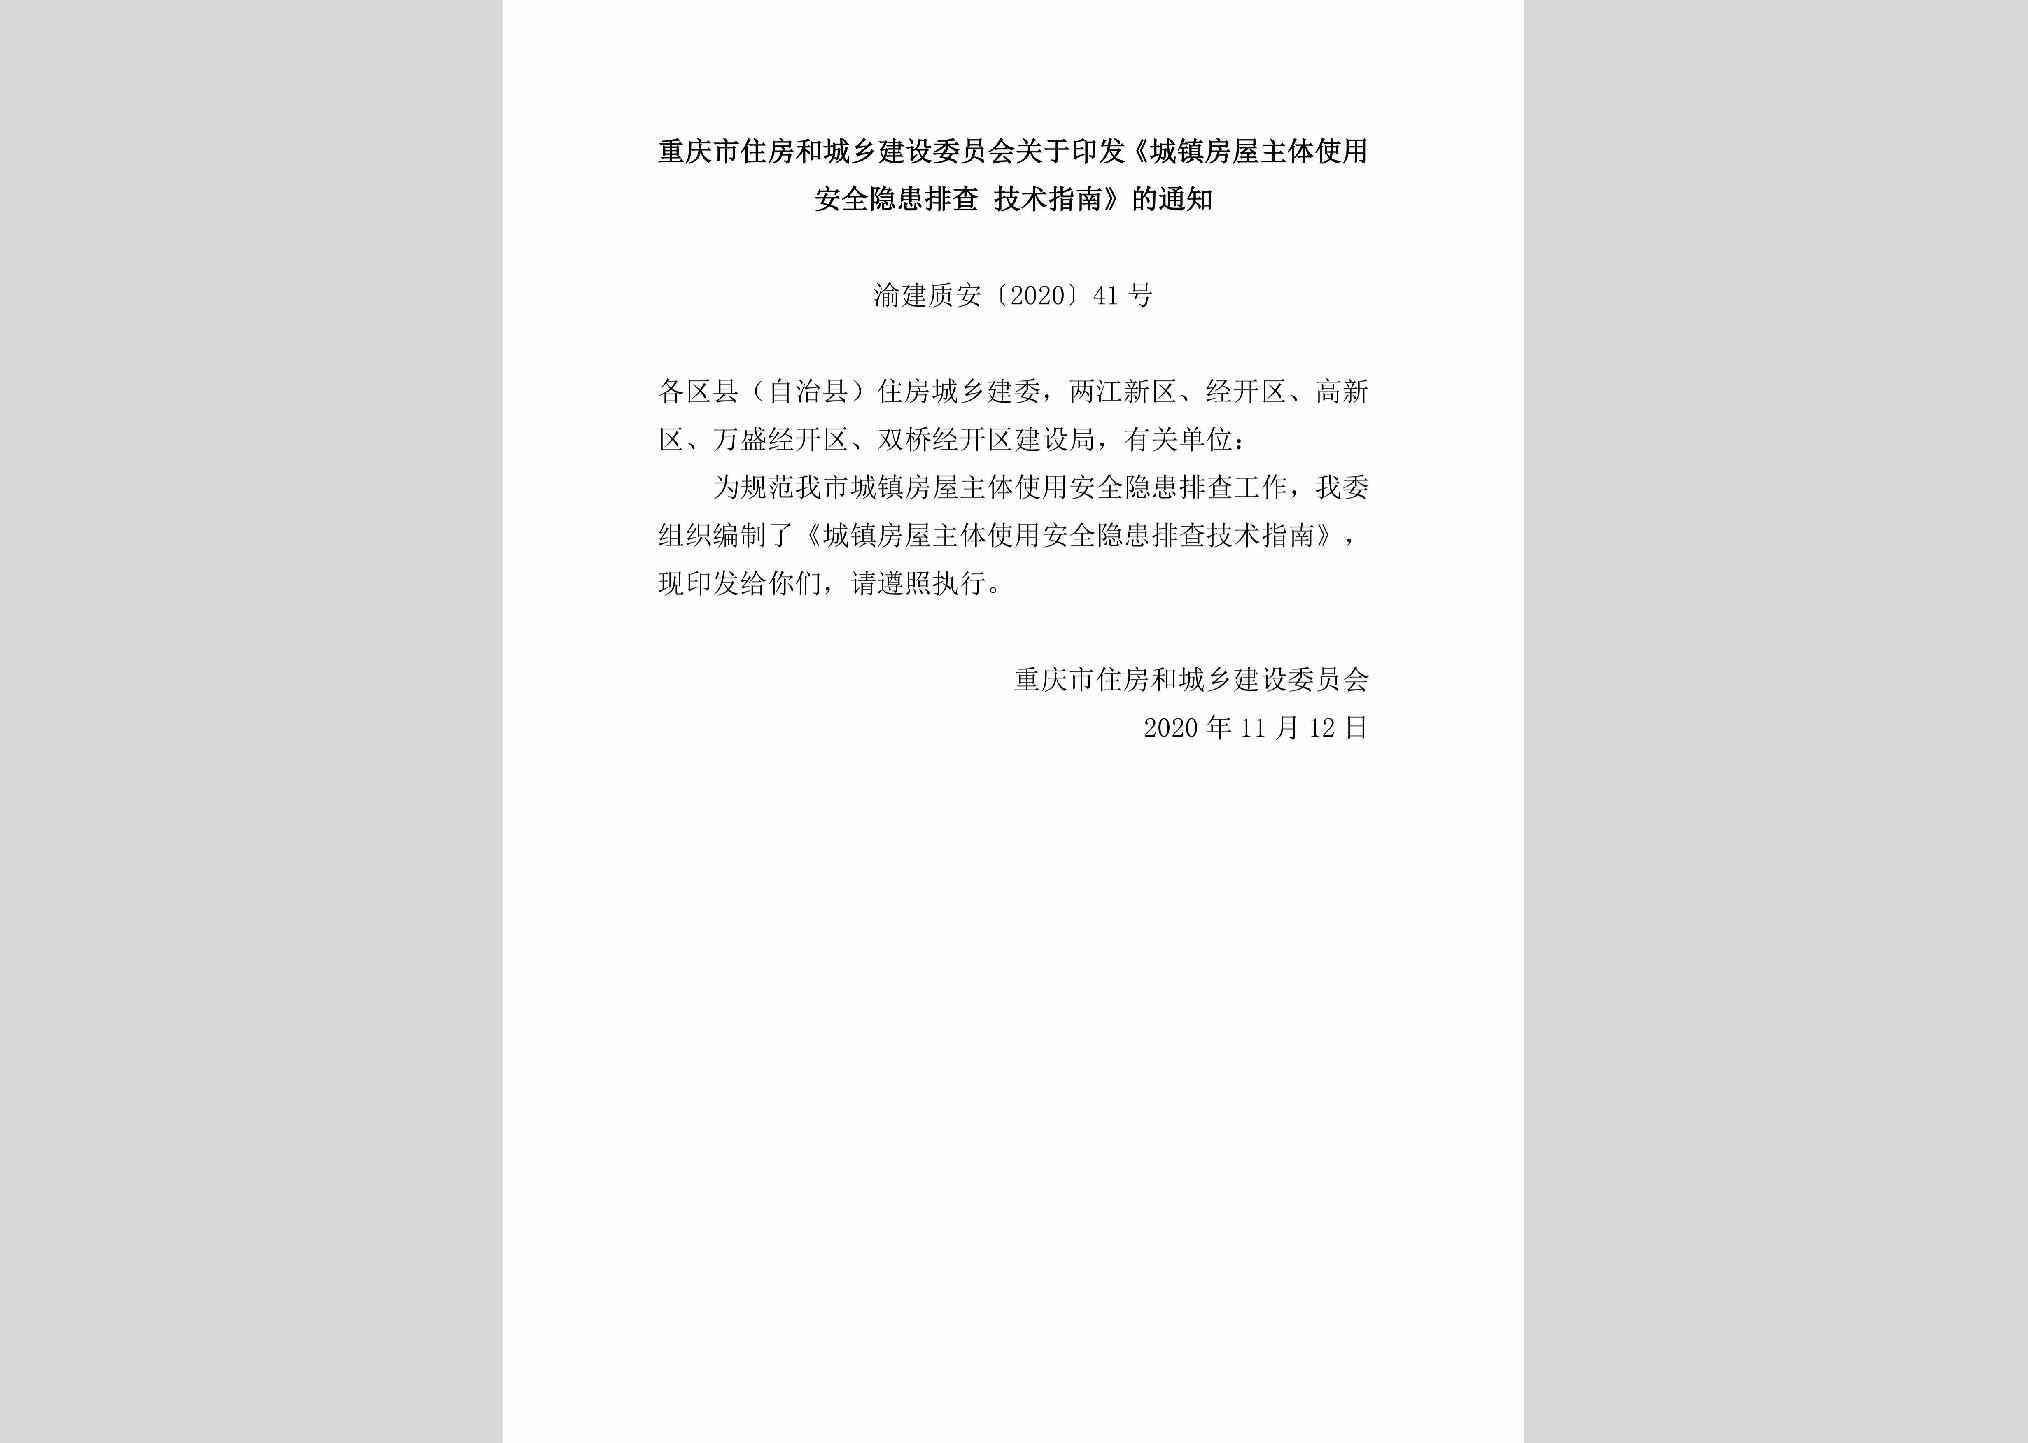 渝建质安[2020]41号：重庆市住房和城乡建设委员会关于印发《城镇房屋主体使用安全隐患排查技术指南》的通知